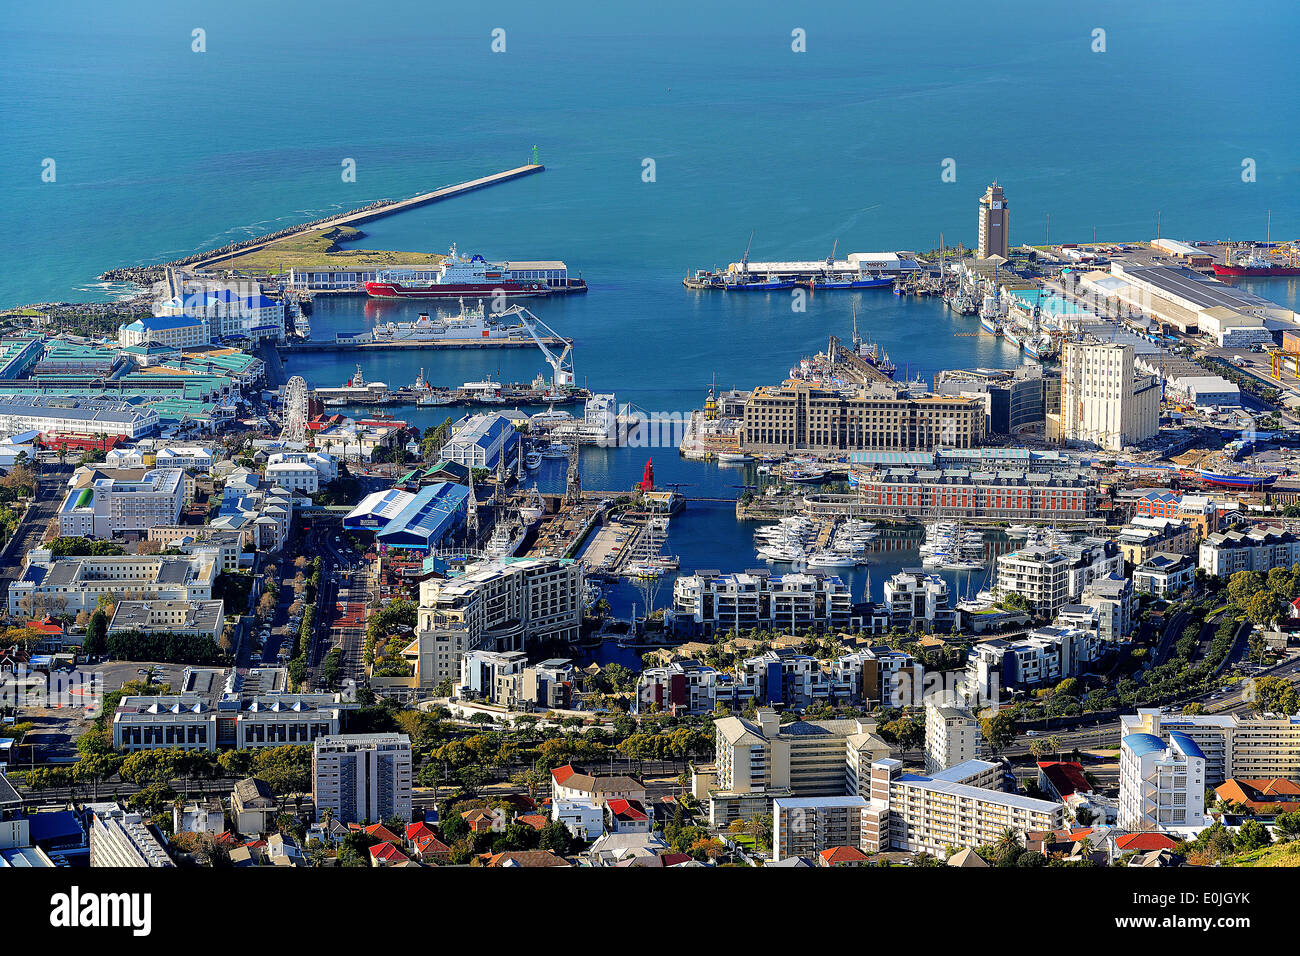 Victoria und Alfred Waterfront, touristisches Zentrum von Kapstadt, gesehen vom Signal Hill, Kapstadt, West Kap, Western Cape, S Foto Stock